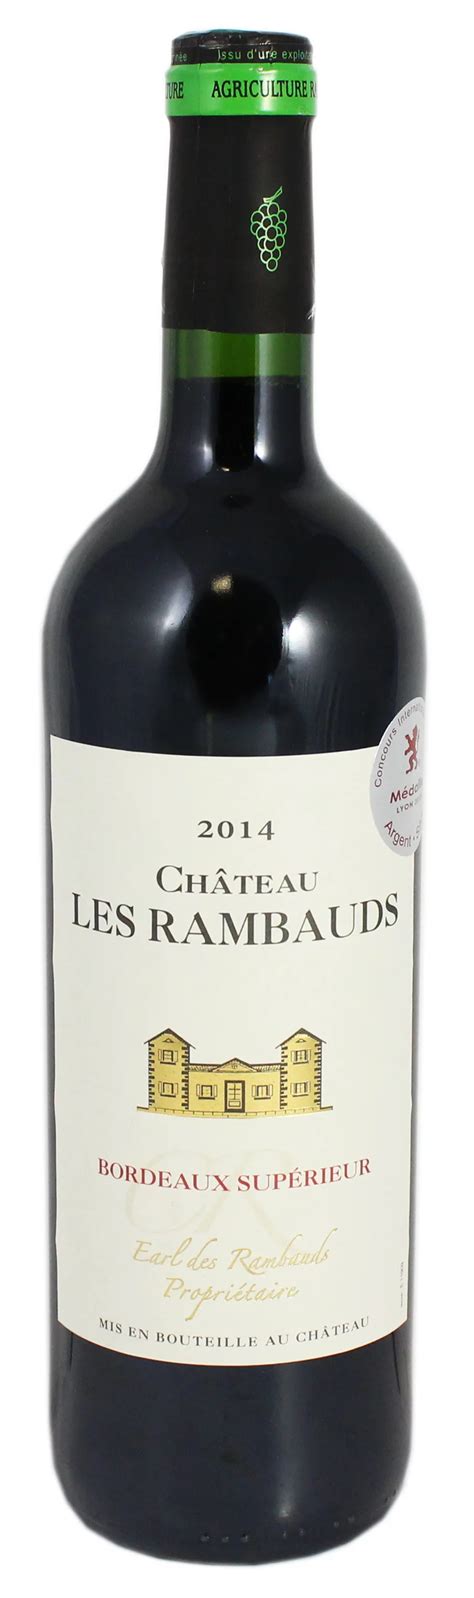 Chateau Le Rambauds Bordeaux Superieur Shop Wine At H E B